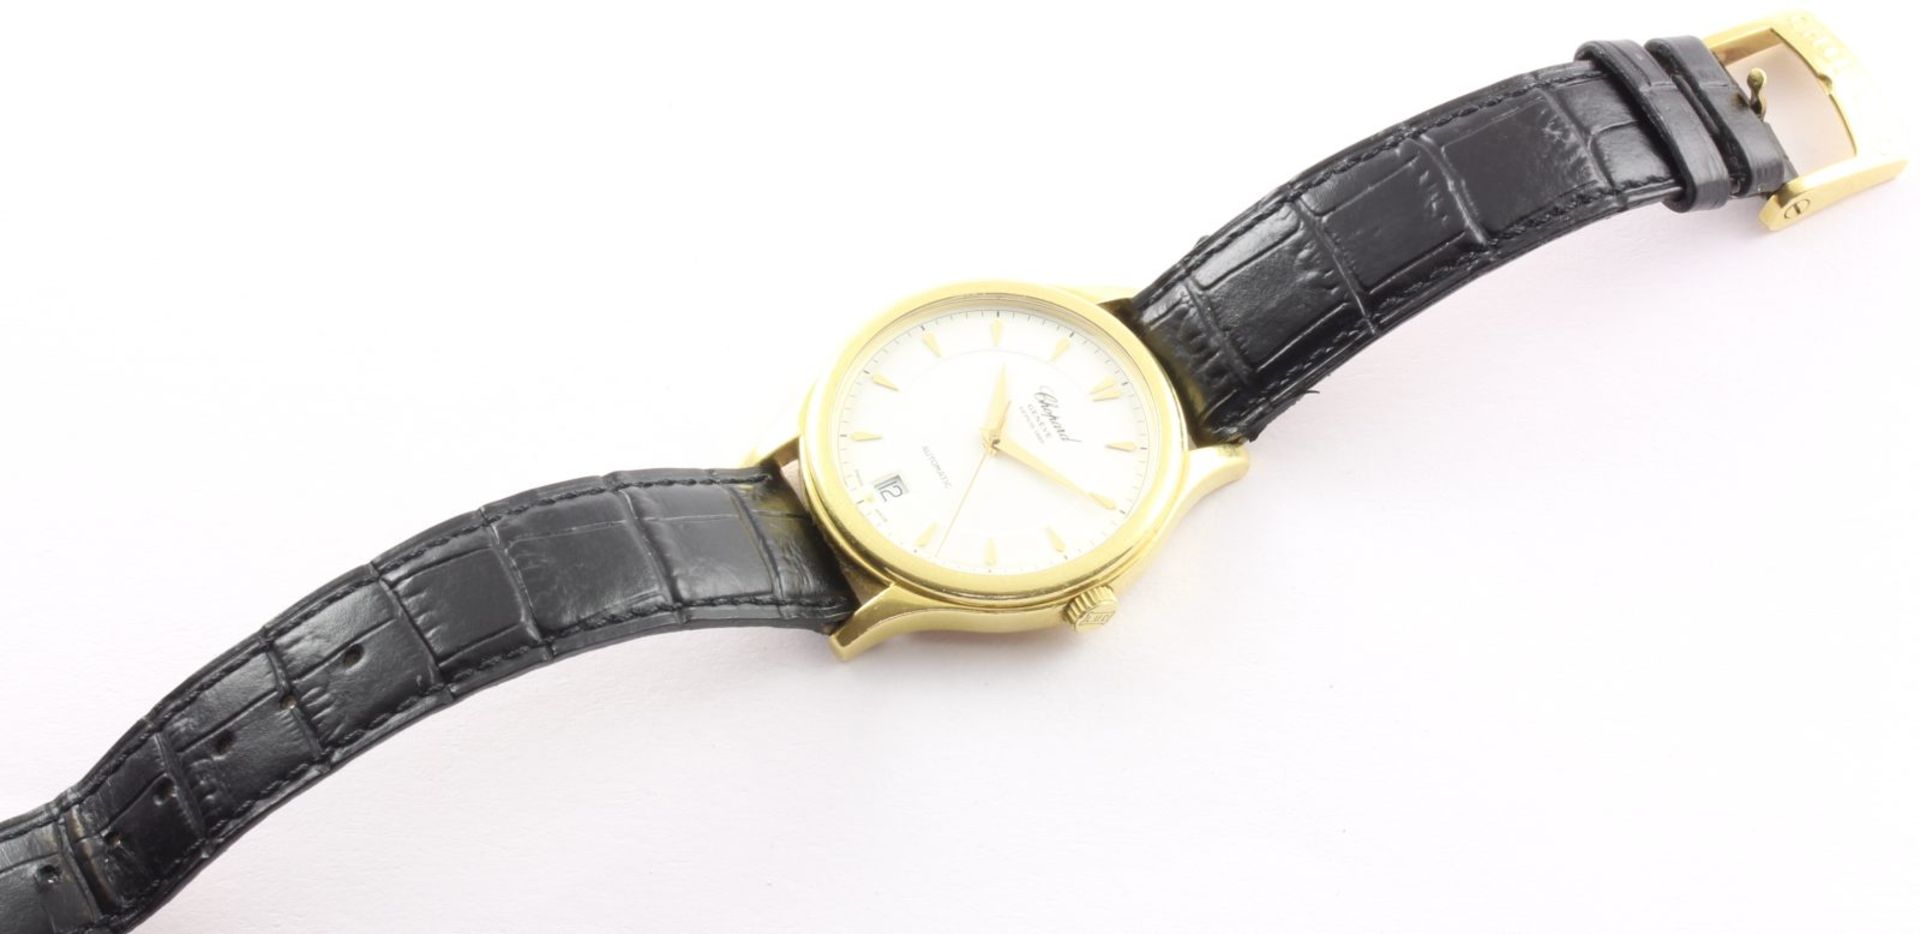 Armbanduhr, Chopard, 750/ooo Gelbgold, LUC 1860, Automatik, Papiere, Gebrauchsspuren - Bild 3 aus 3